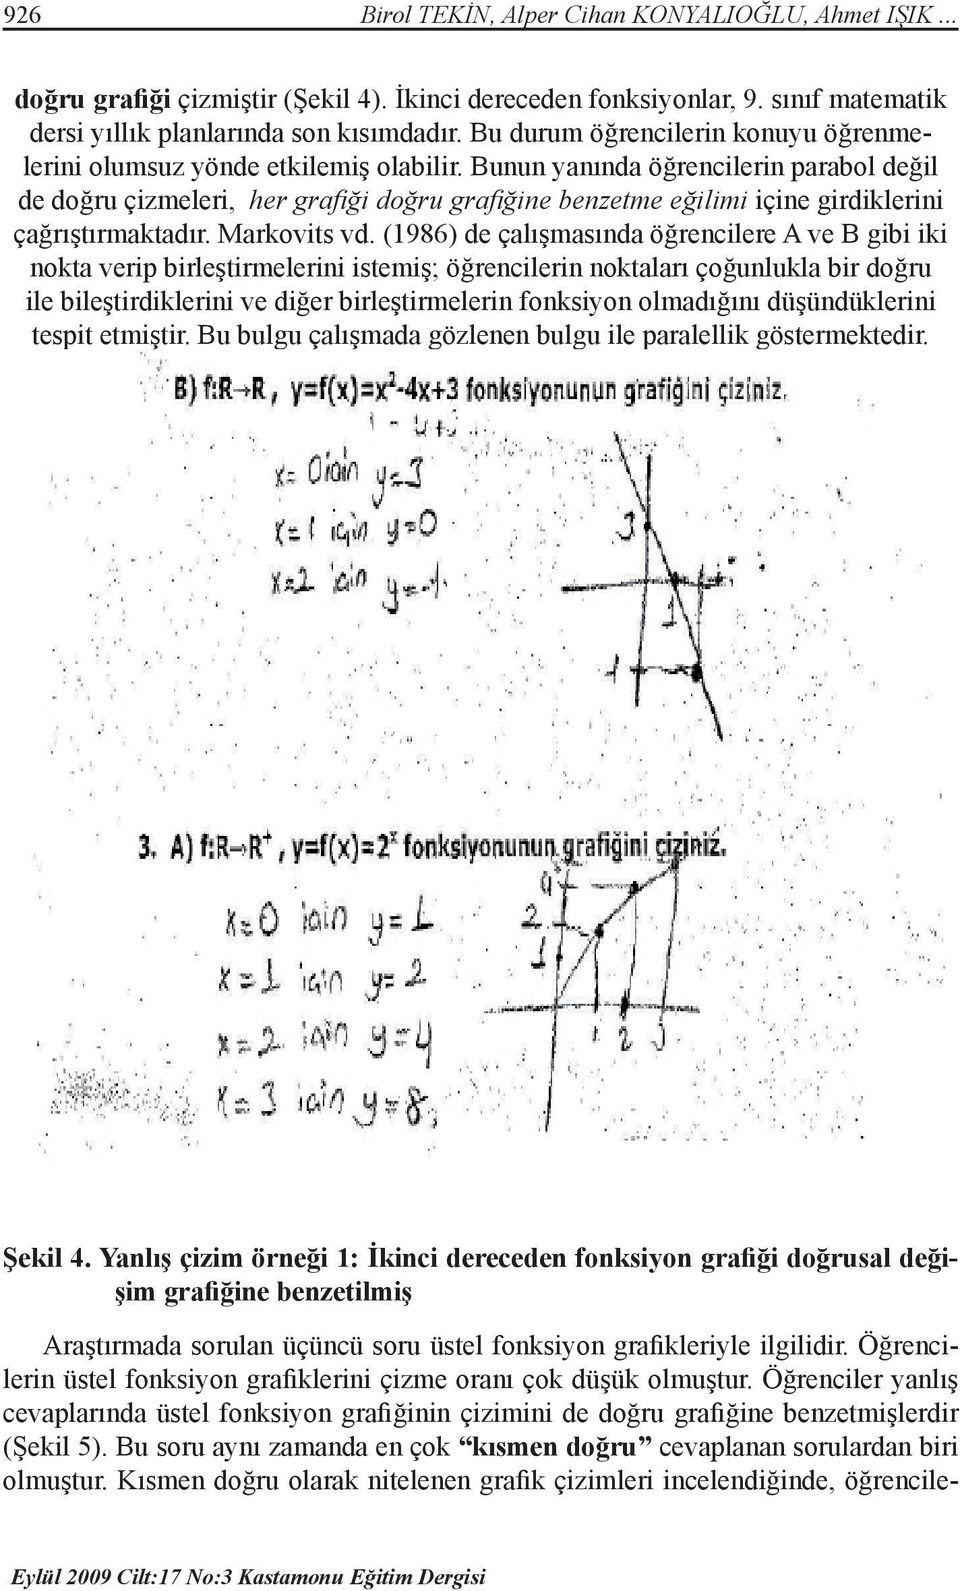 Bunun yanında öğrencilerin parabol değil de doğru çizmeleri, her grafiği doğru grafiğine benzetme eğilimi içine girdiklerini çağrıştırmaktadır. Markovits vd.